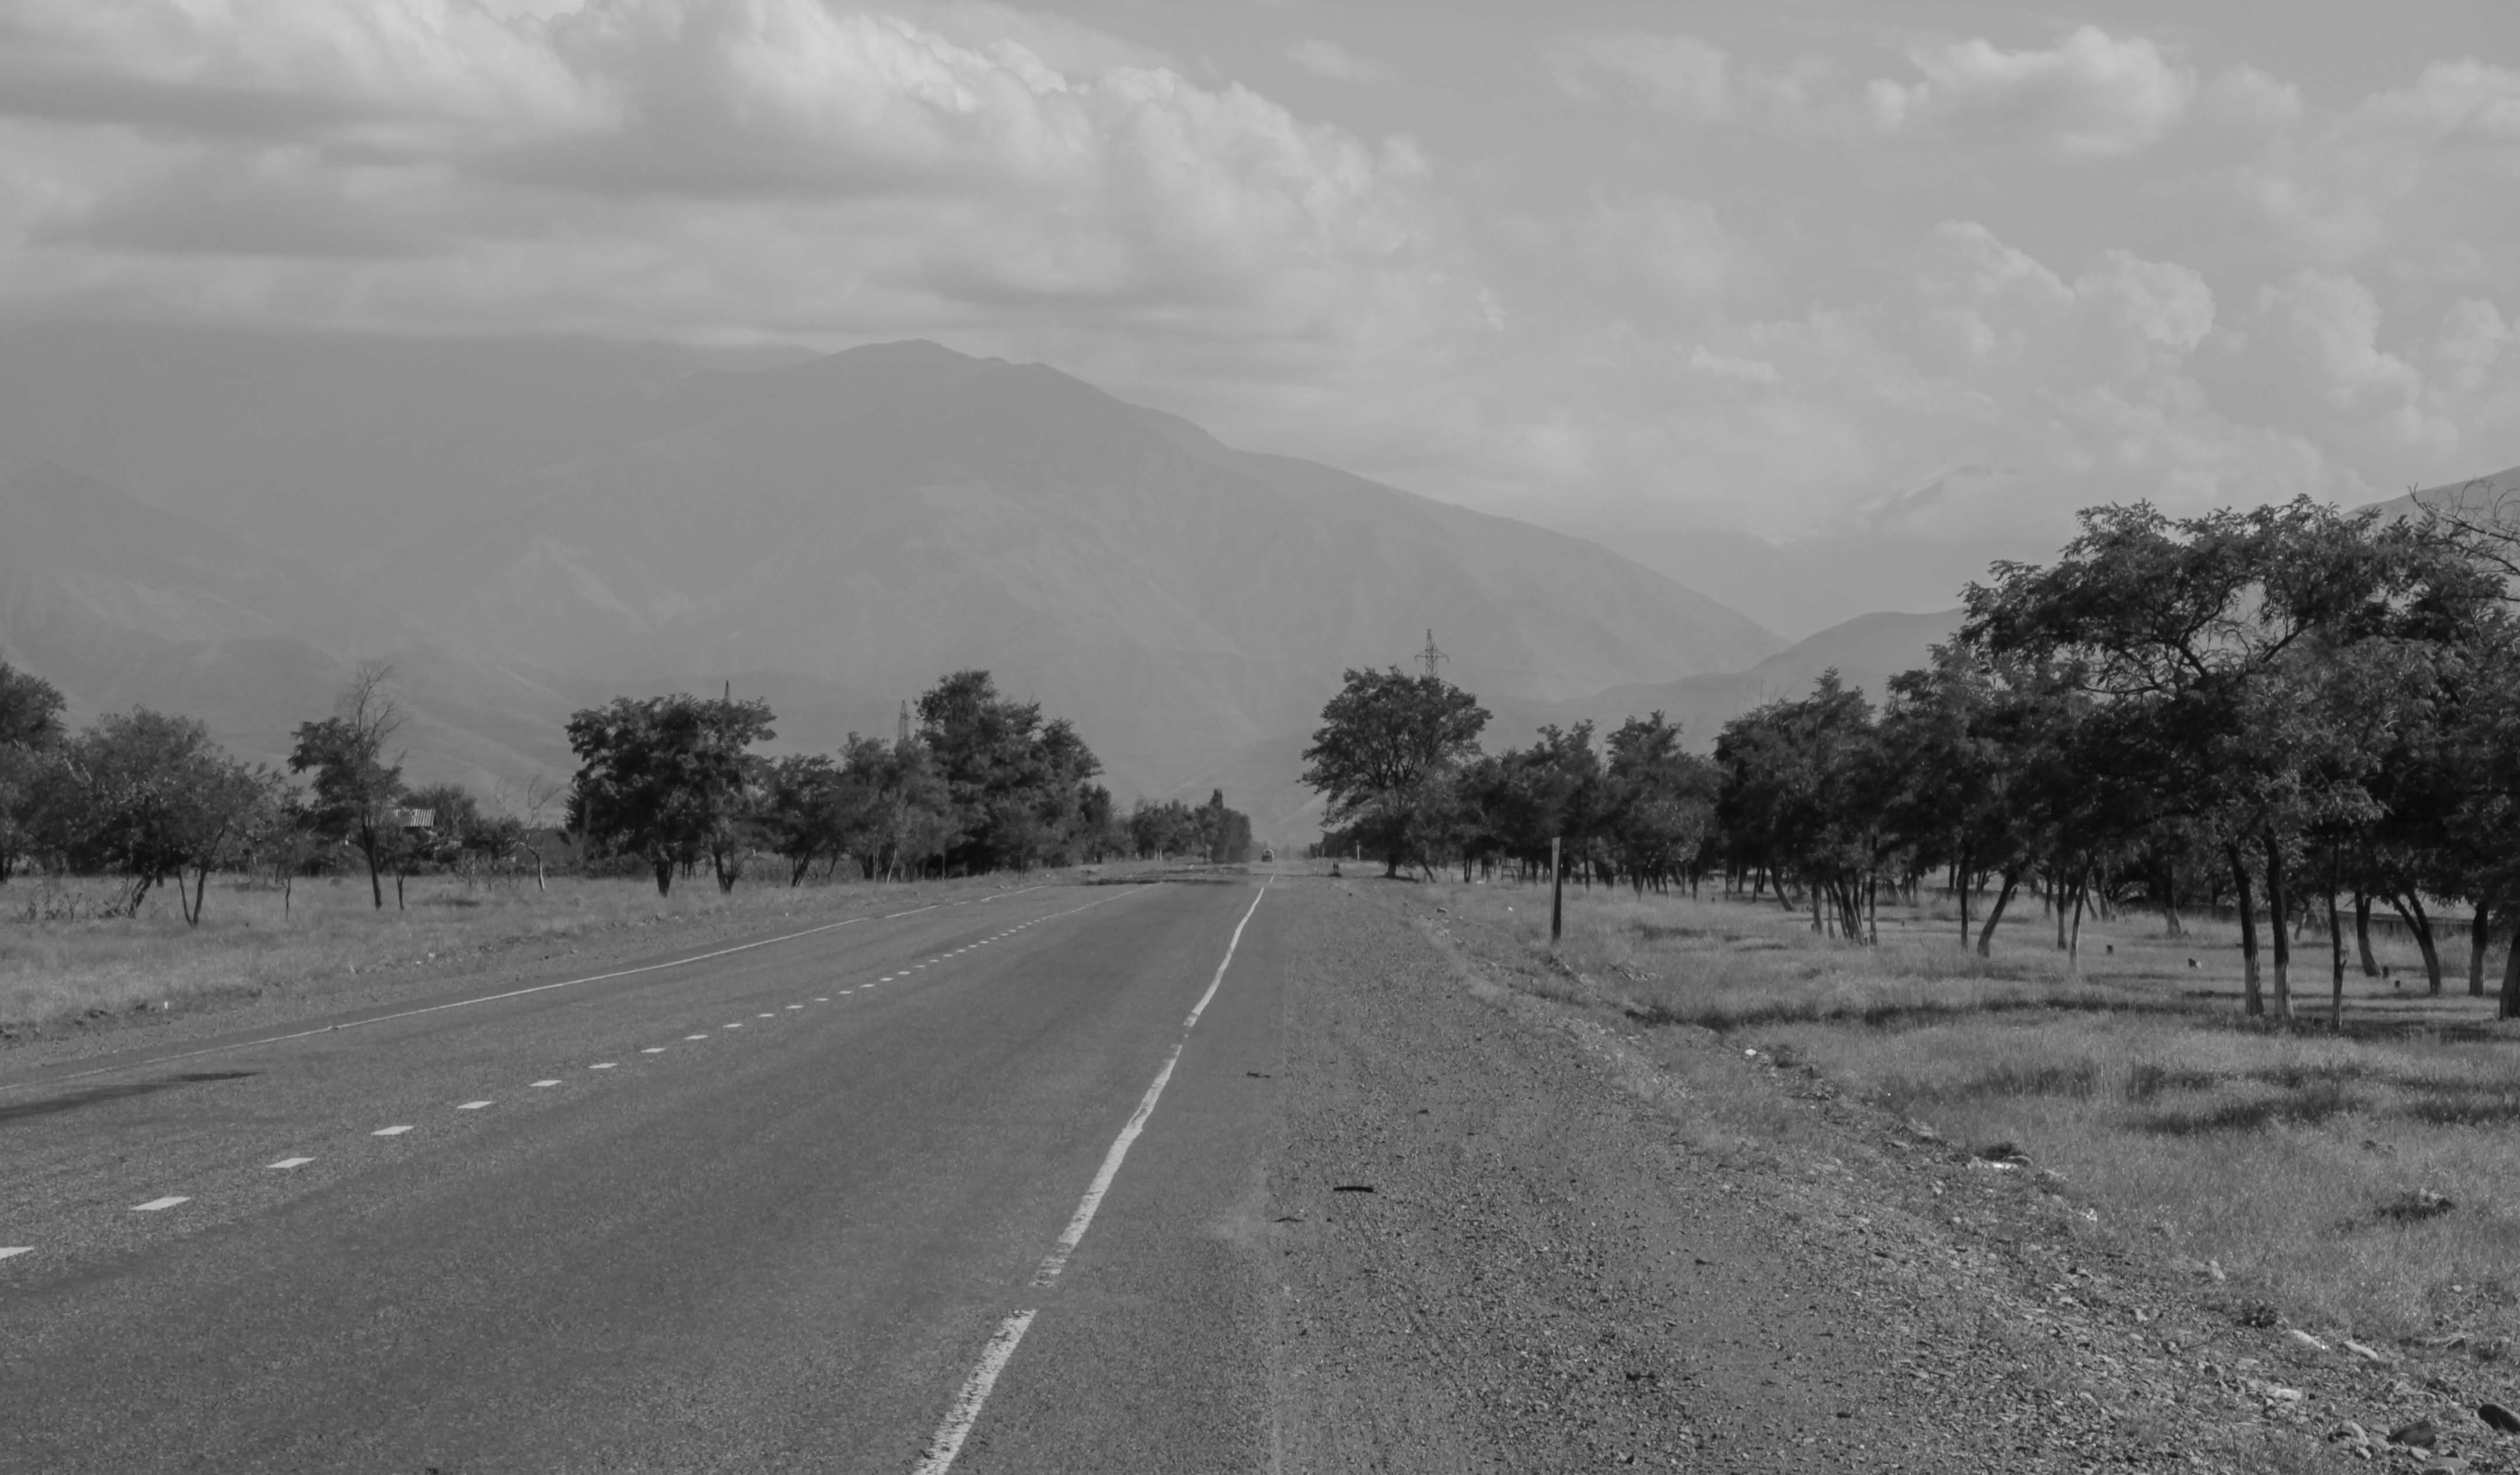 Сосновская дорога, ведущая в высокогорный перевал Тоо-Ашу. Стратегическая трасса между севером и югом Кыргызстана проходит через Кара-Бал